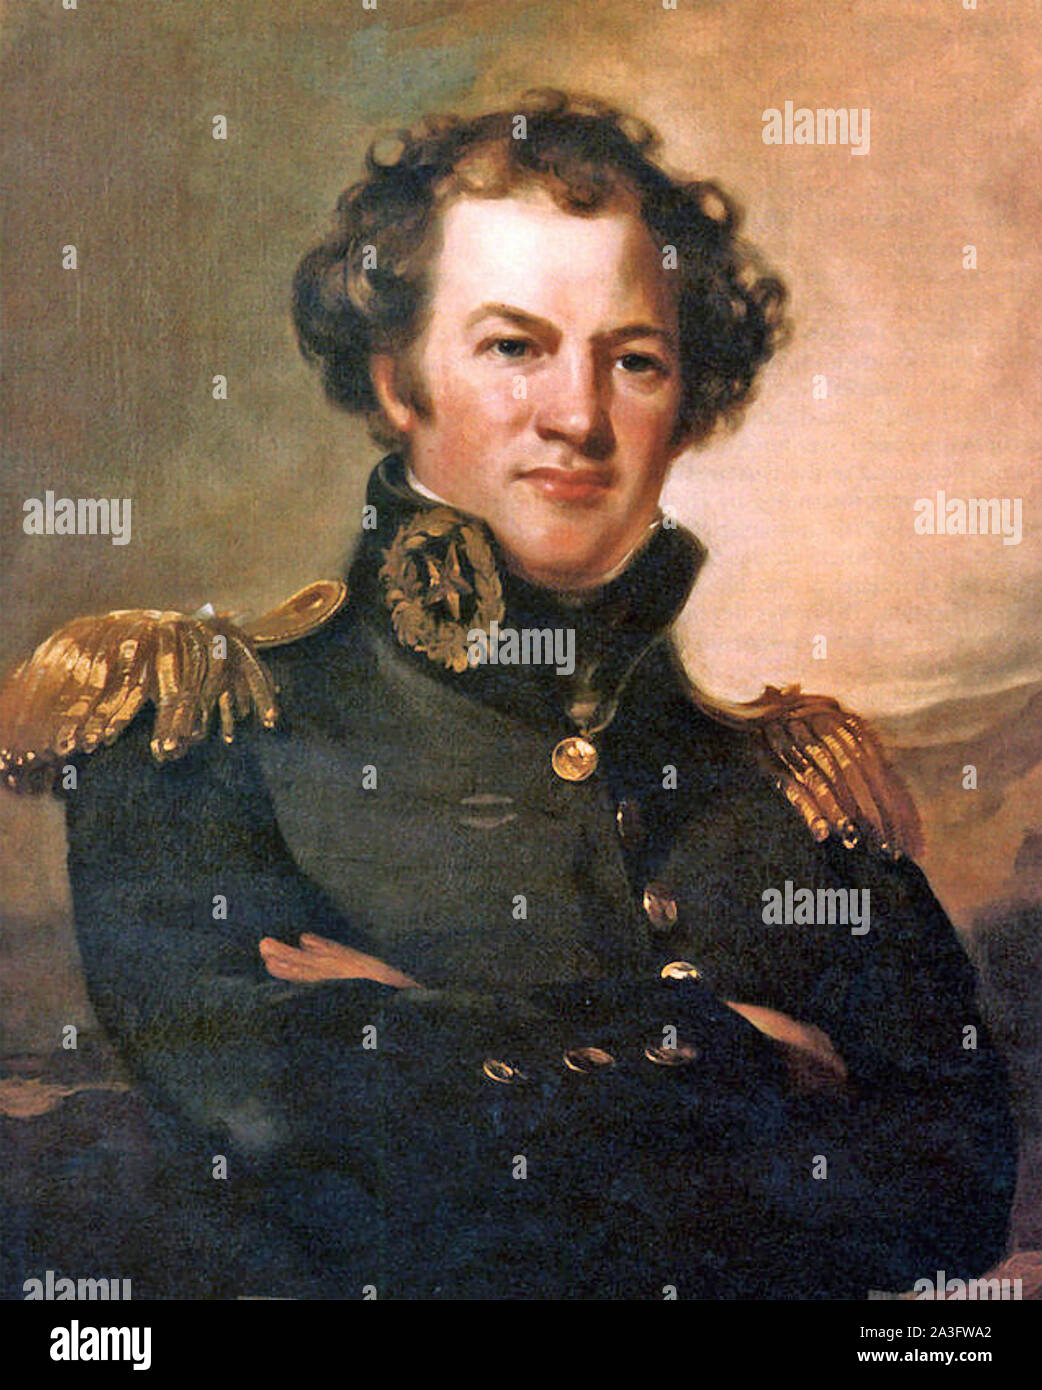 ALEXANDER MACOMB (1782-1841) kommandierenden General der Vereinigten Staaten Armee 1828-1841. Eine 18239 Portrait von Thomas Sully Stockfoto